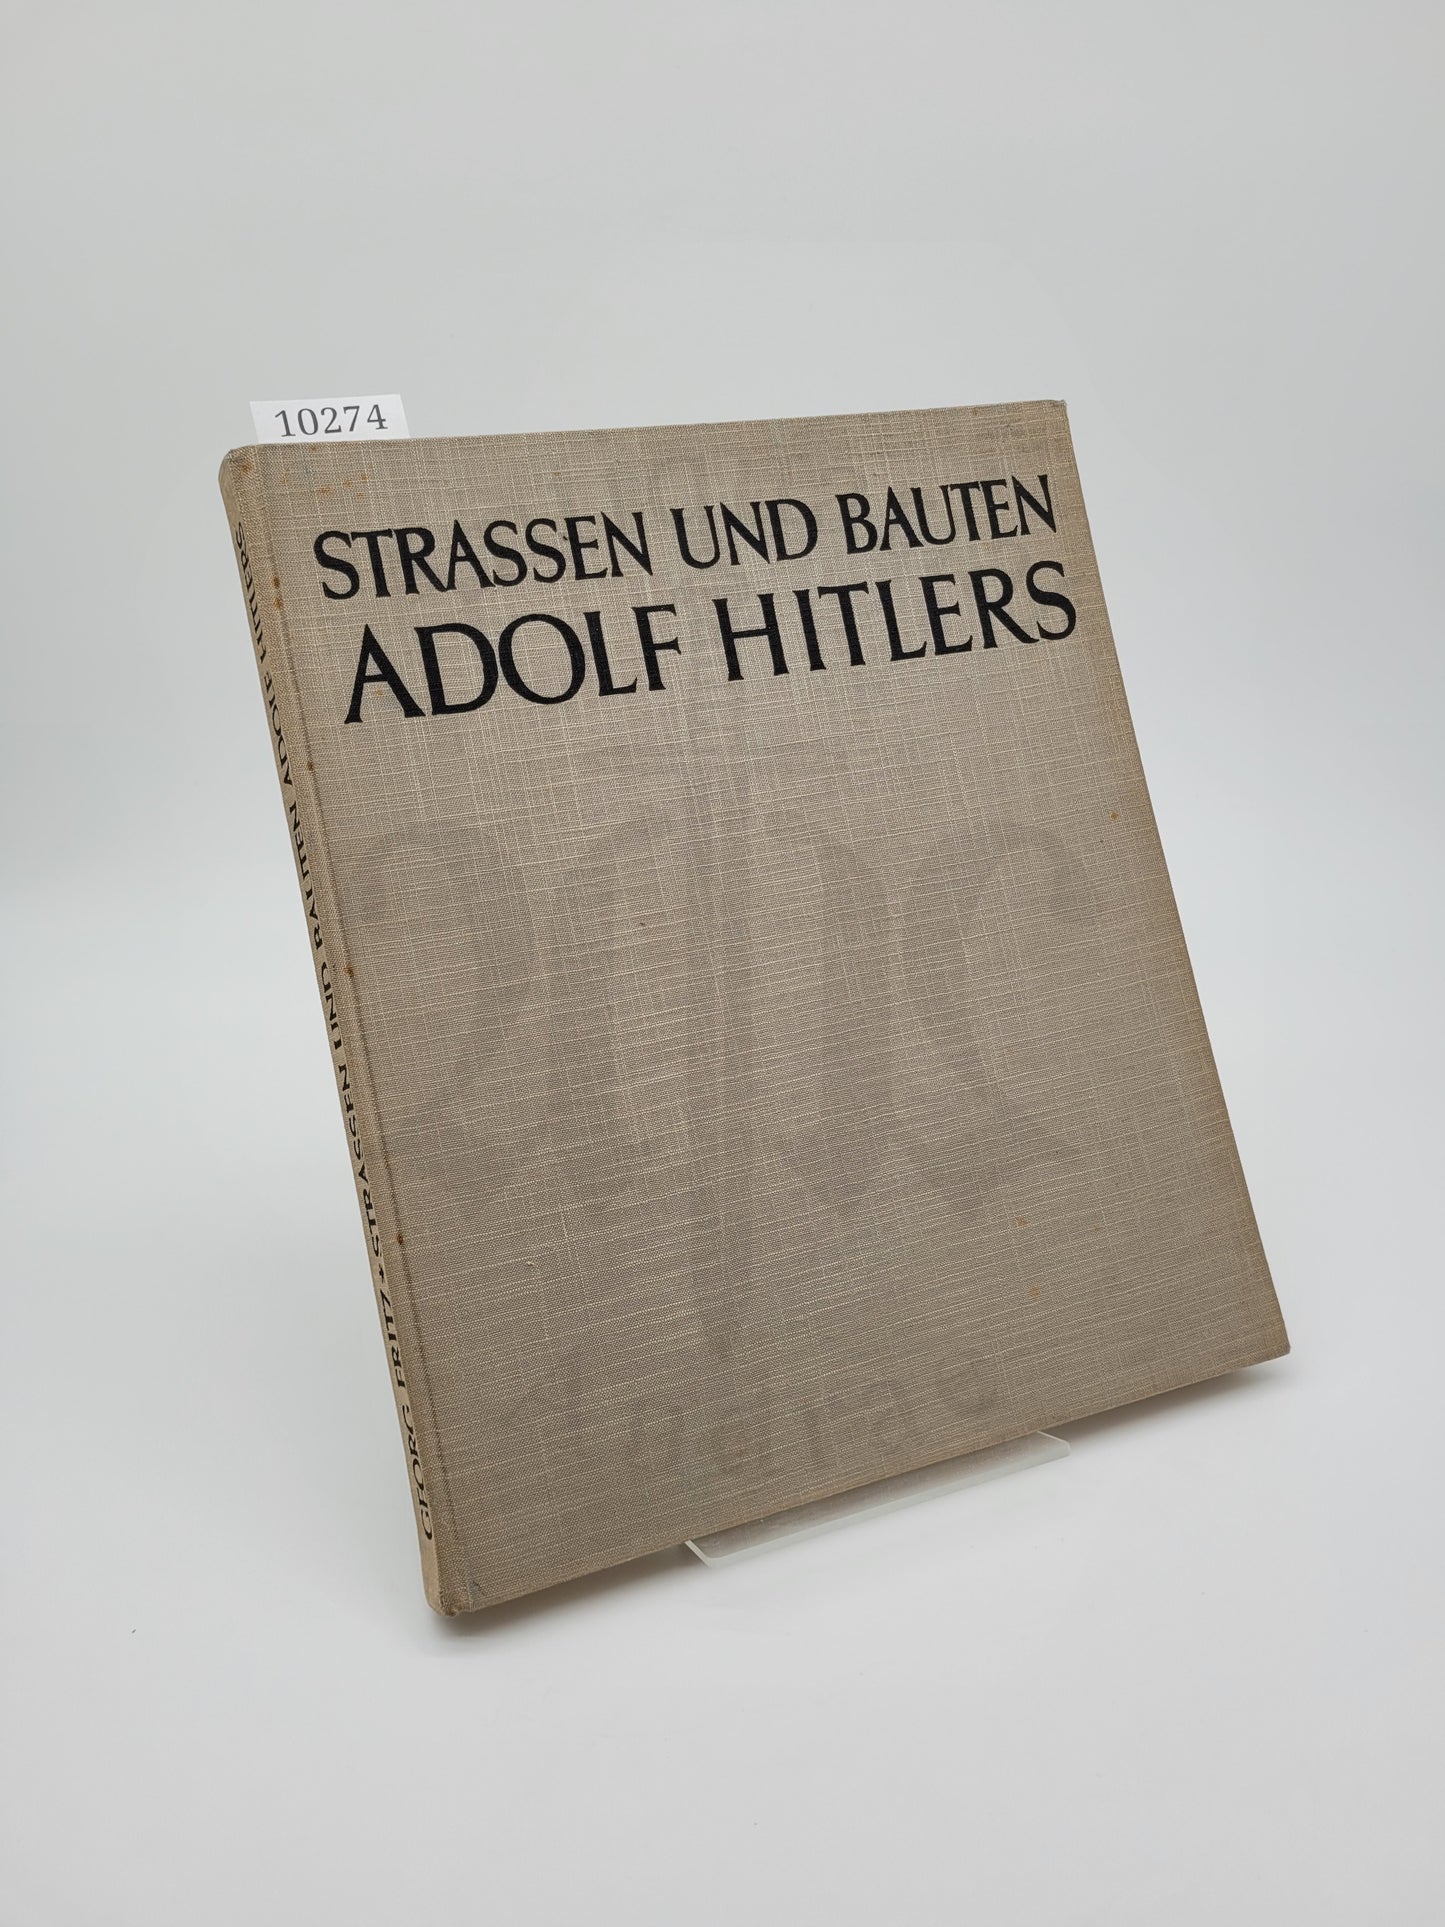 Strassen und Bauten Adolf Hitlers